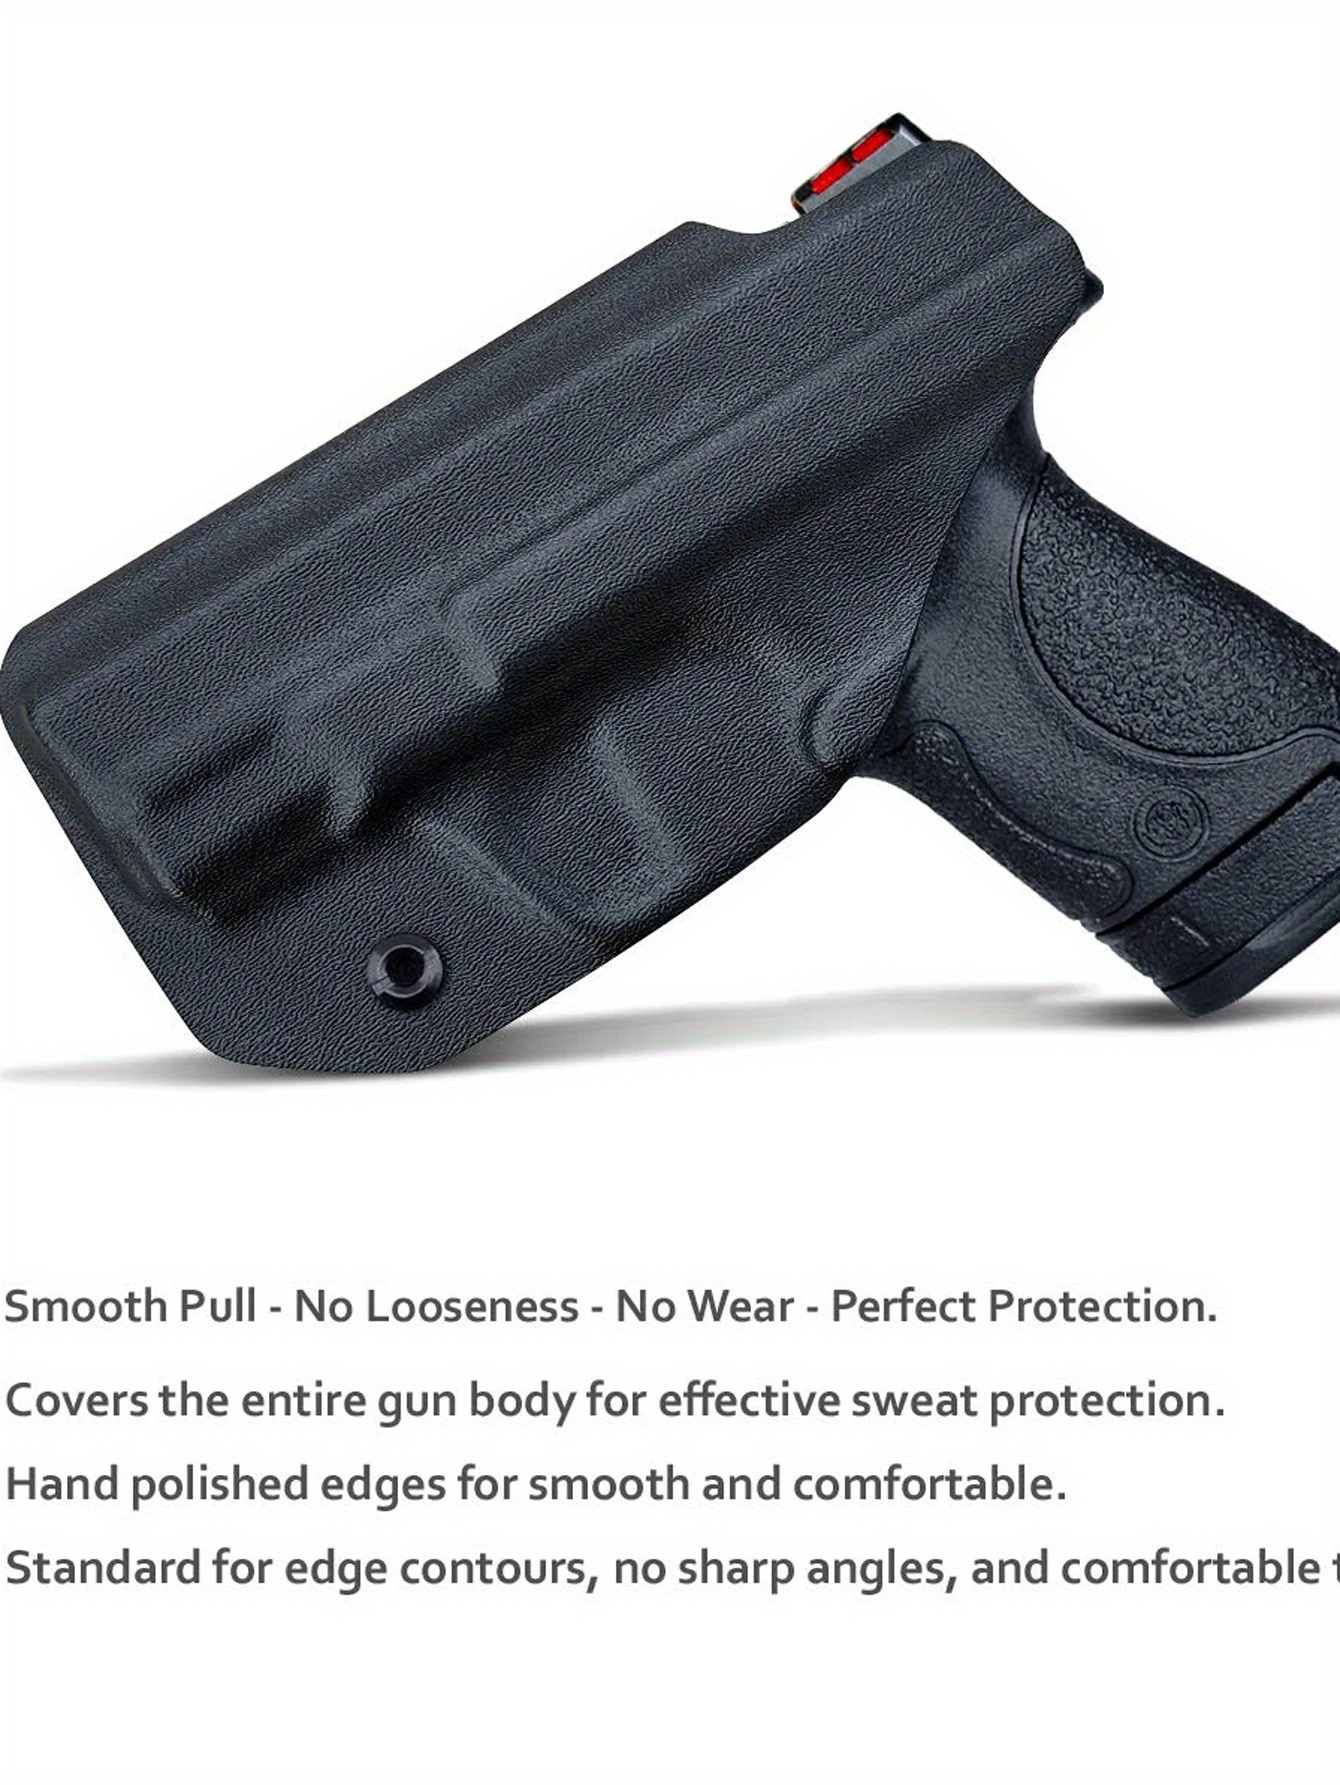 Iwb Kydex Funda Pistola Protección Perfecta Smith Wesson M P - Temu